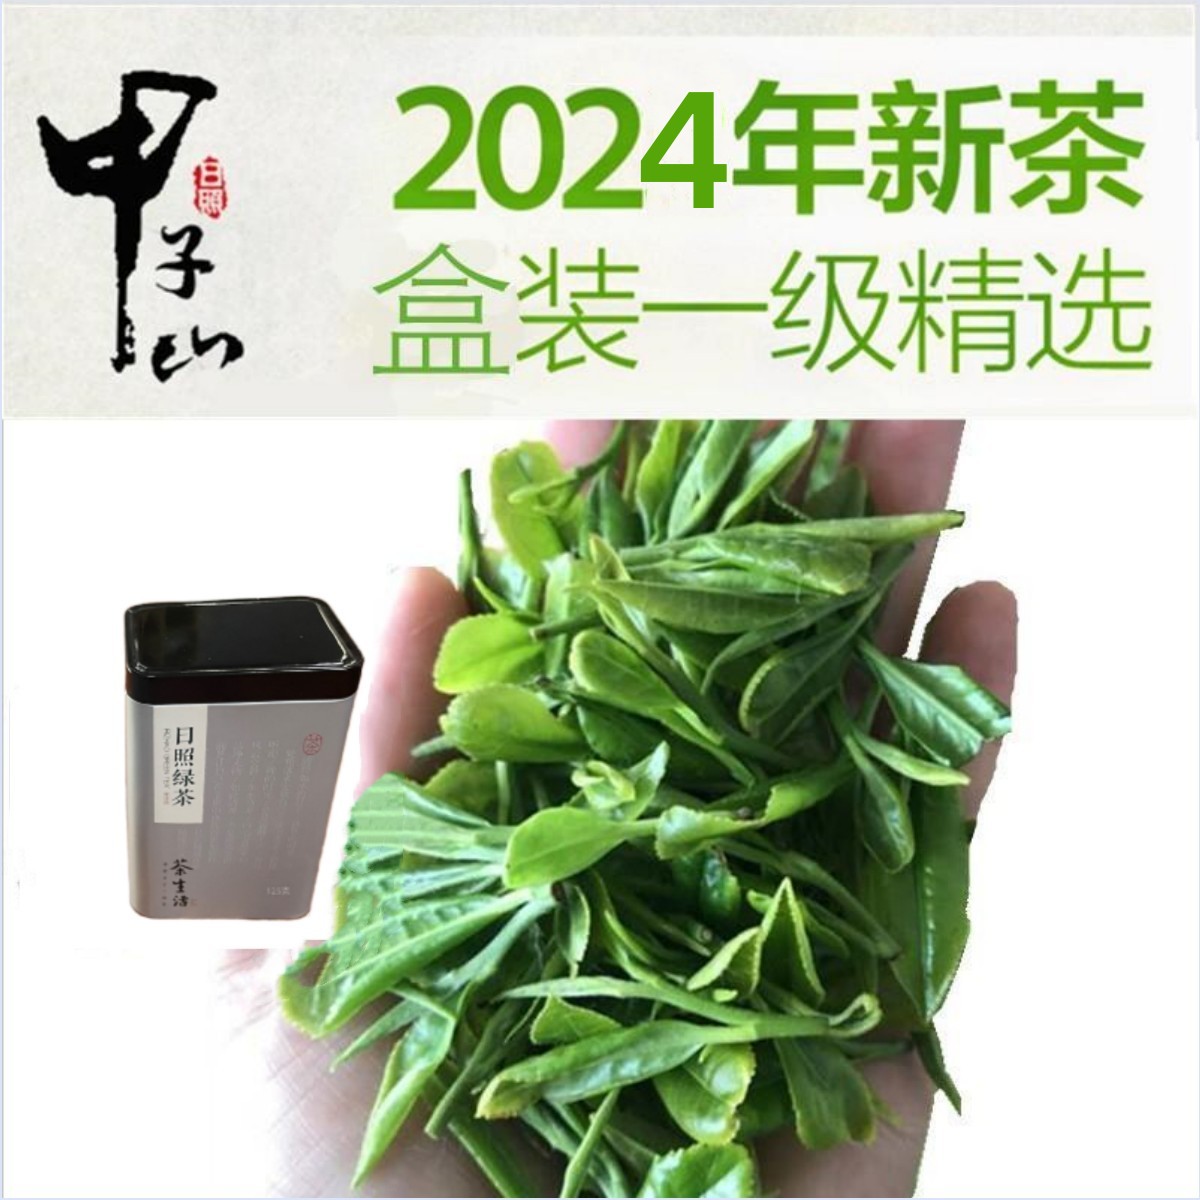 预售 一级精选甲子山日照绿茶2024新茶叶250g罐装 高山云雾绿茶